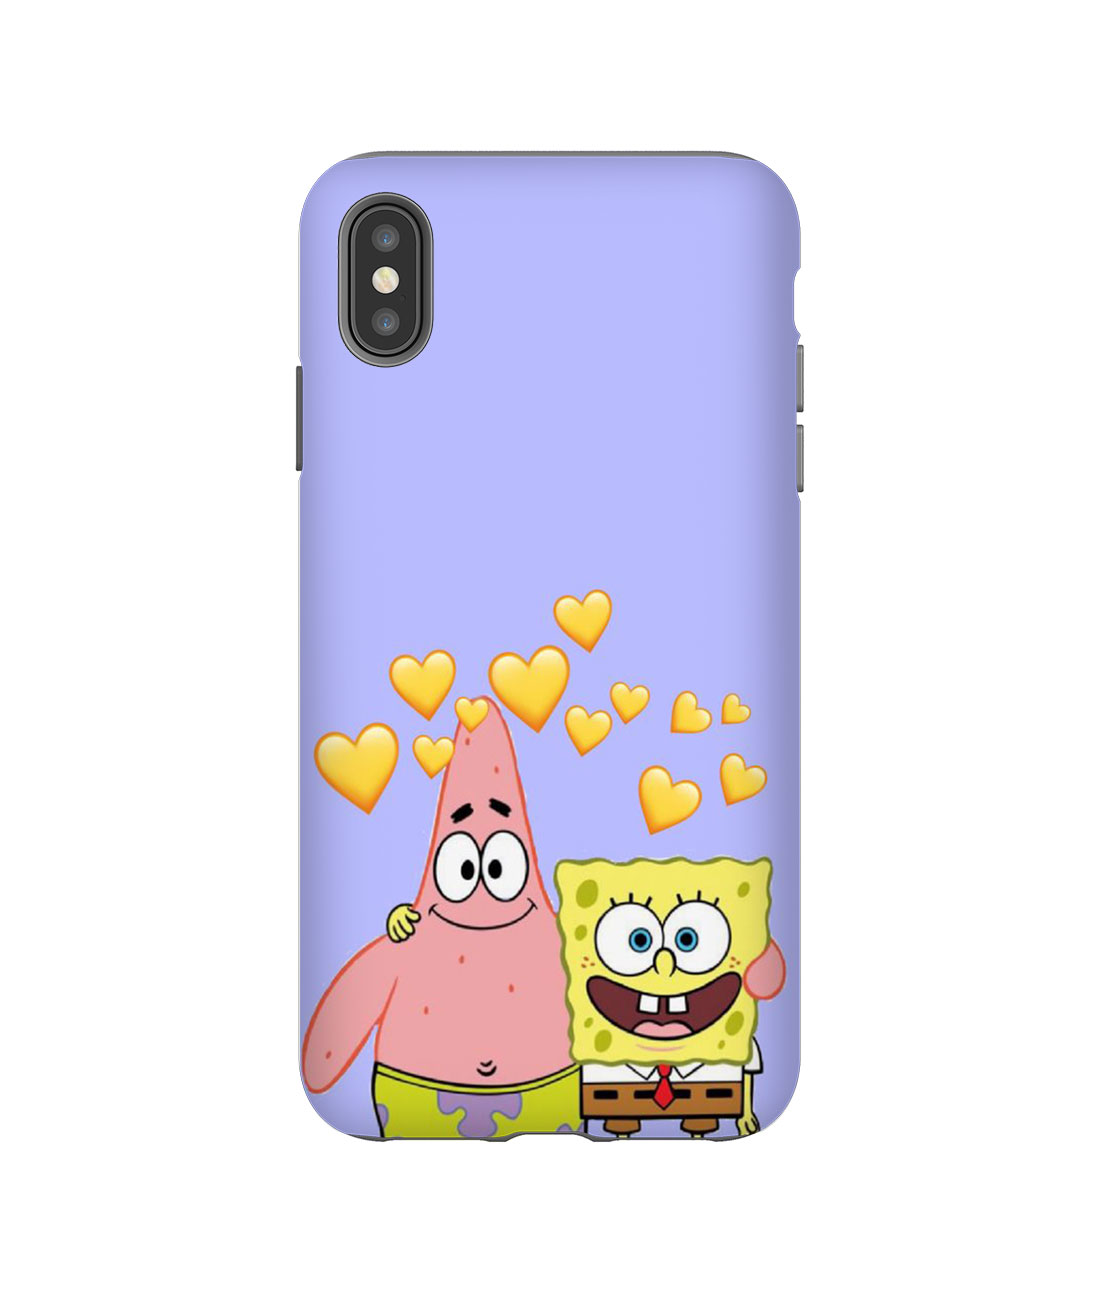 Spongebob Patrick Best Friend Iphone Case 7 7 Plus 8 8 Plus X Xs